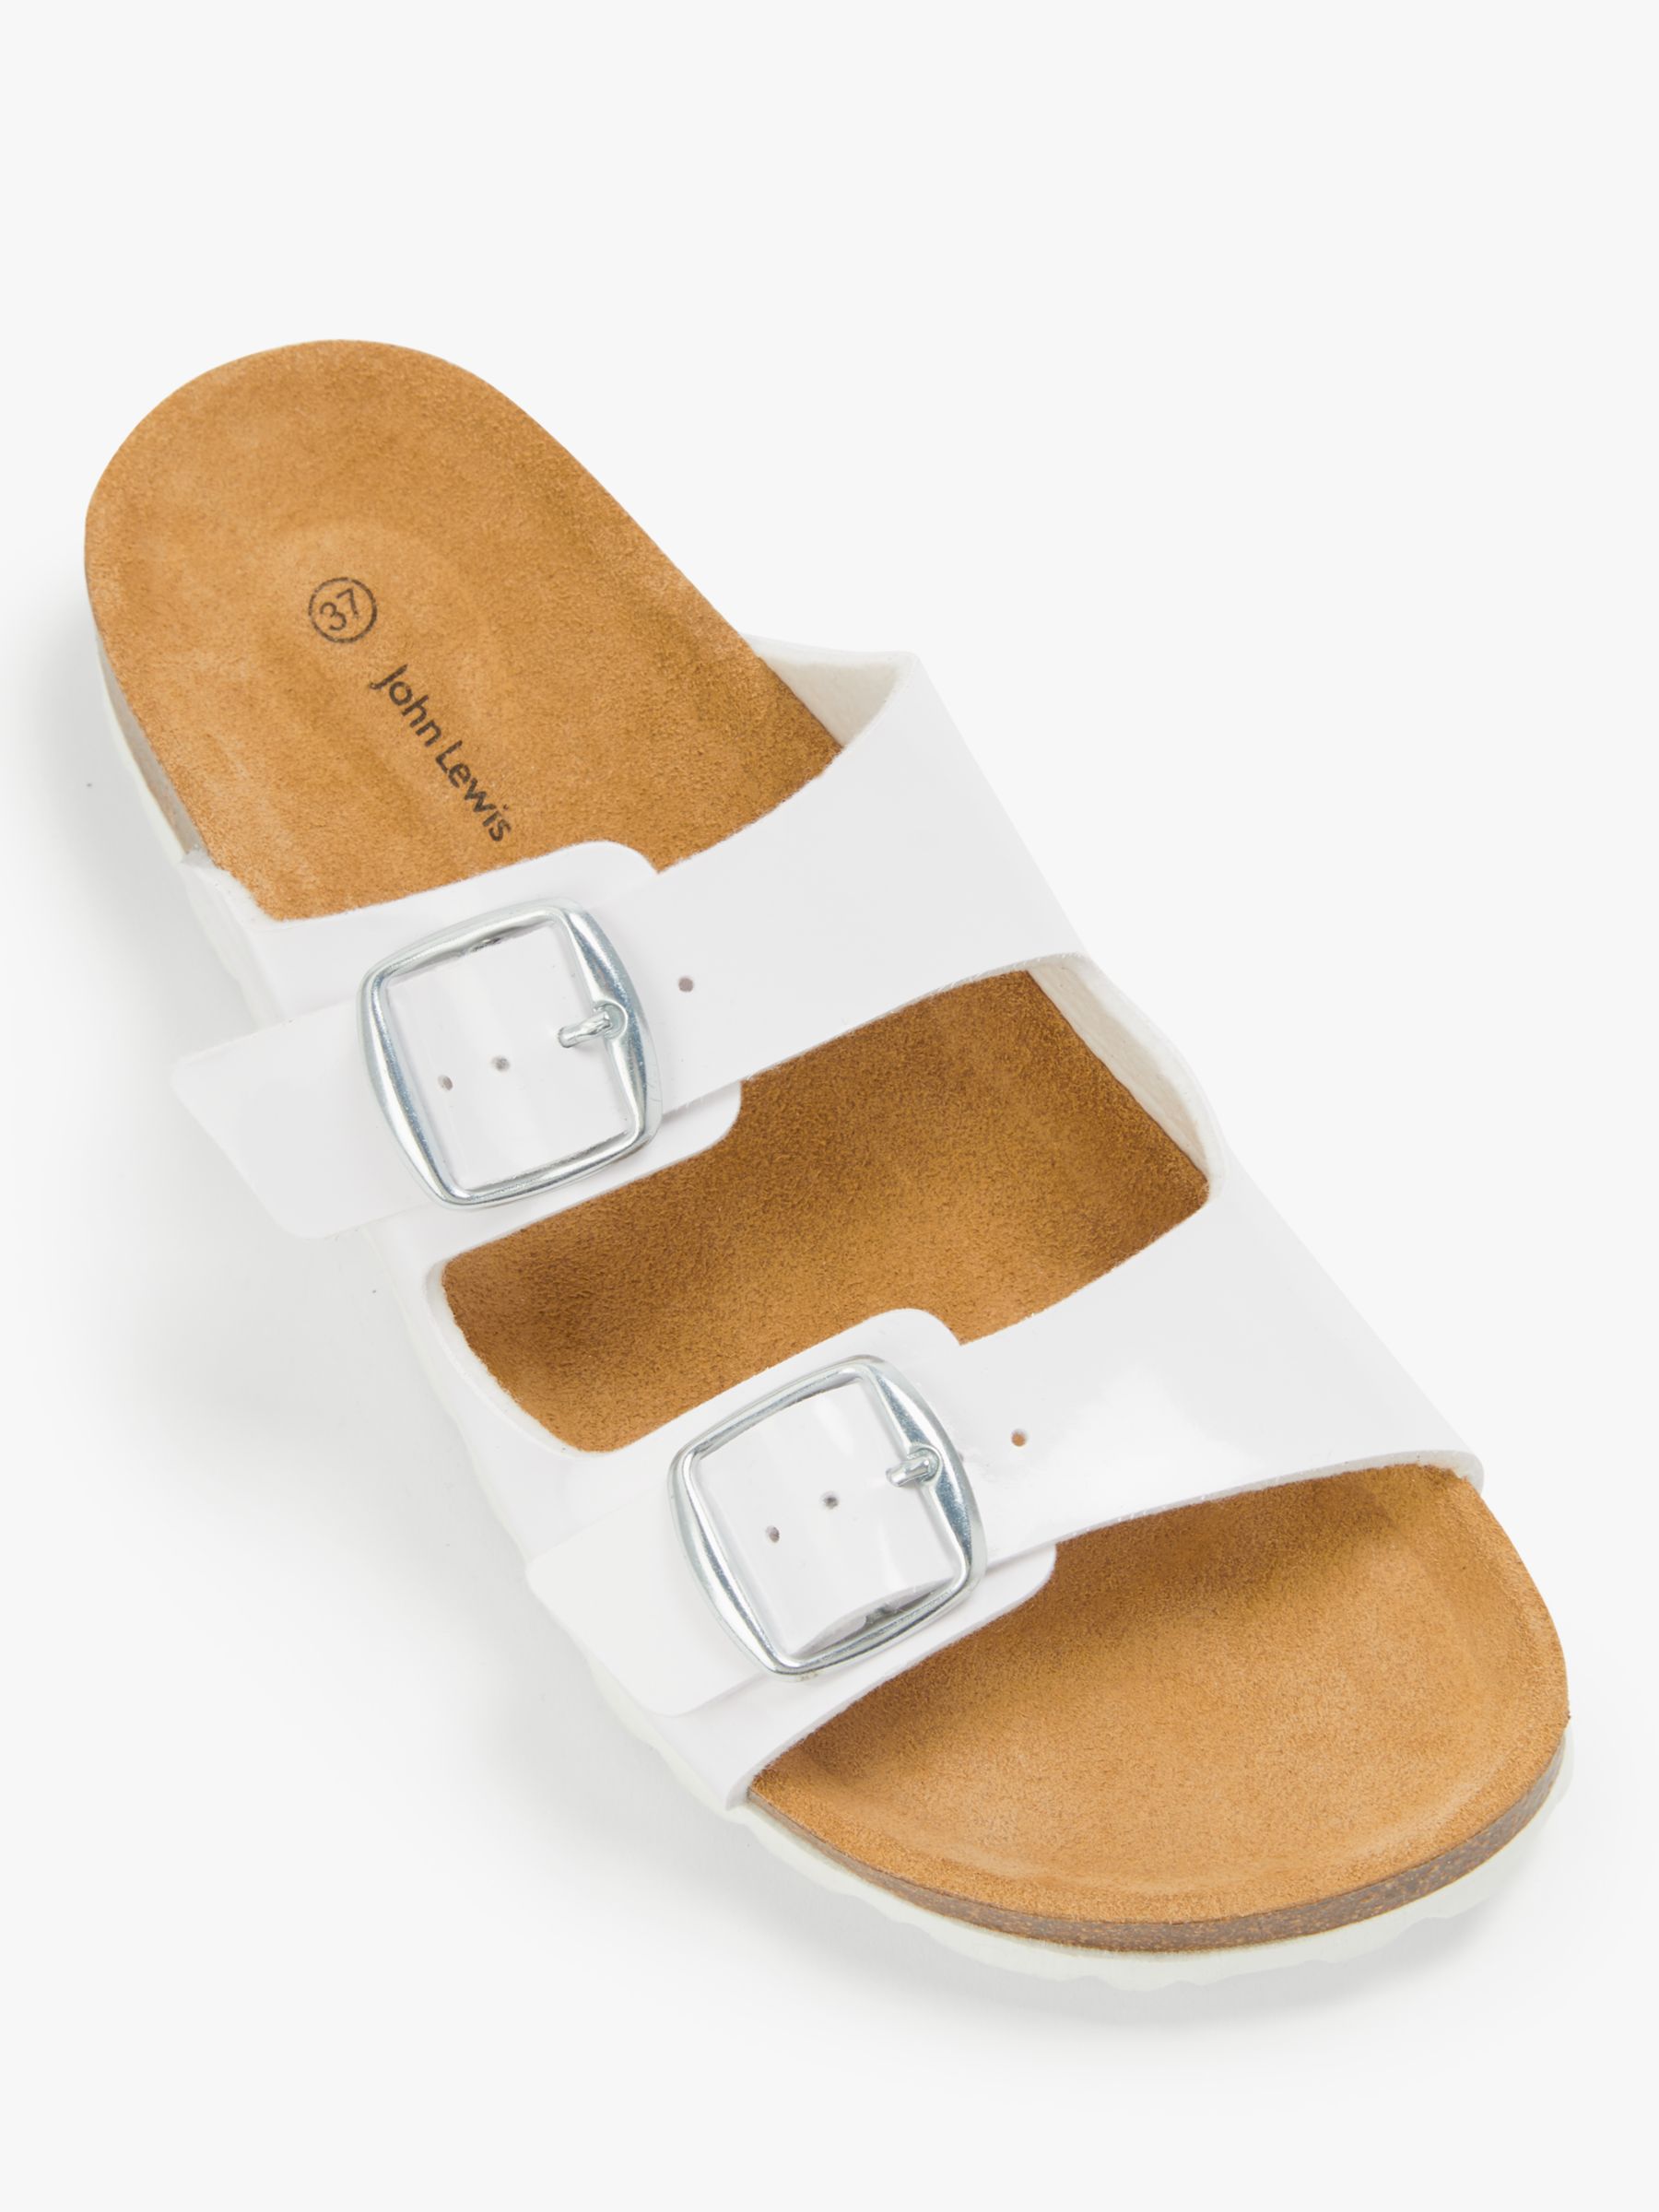 2 strap sandals white